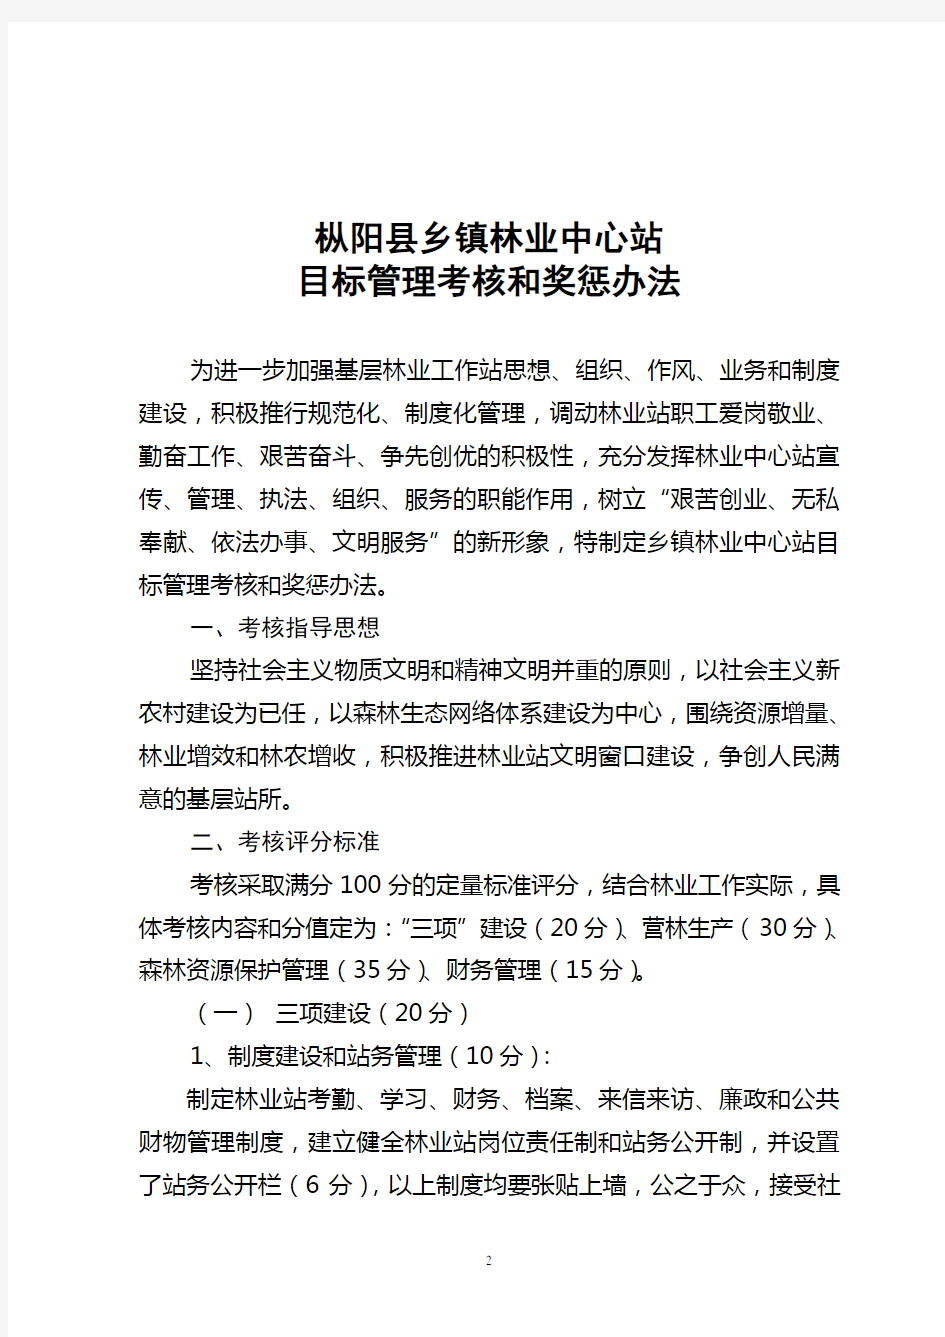 枞阳县林业中心目标管理考核和奖惩办法